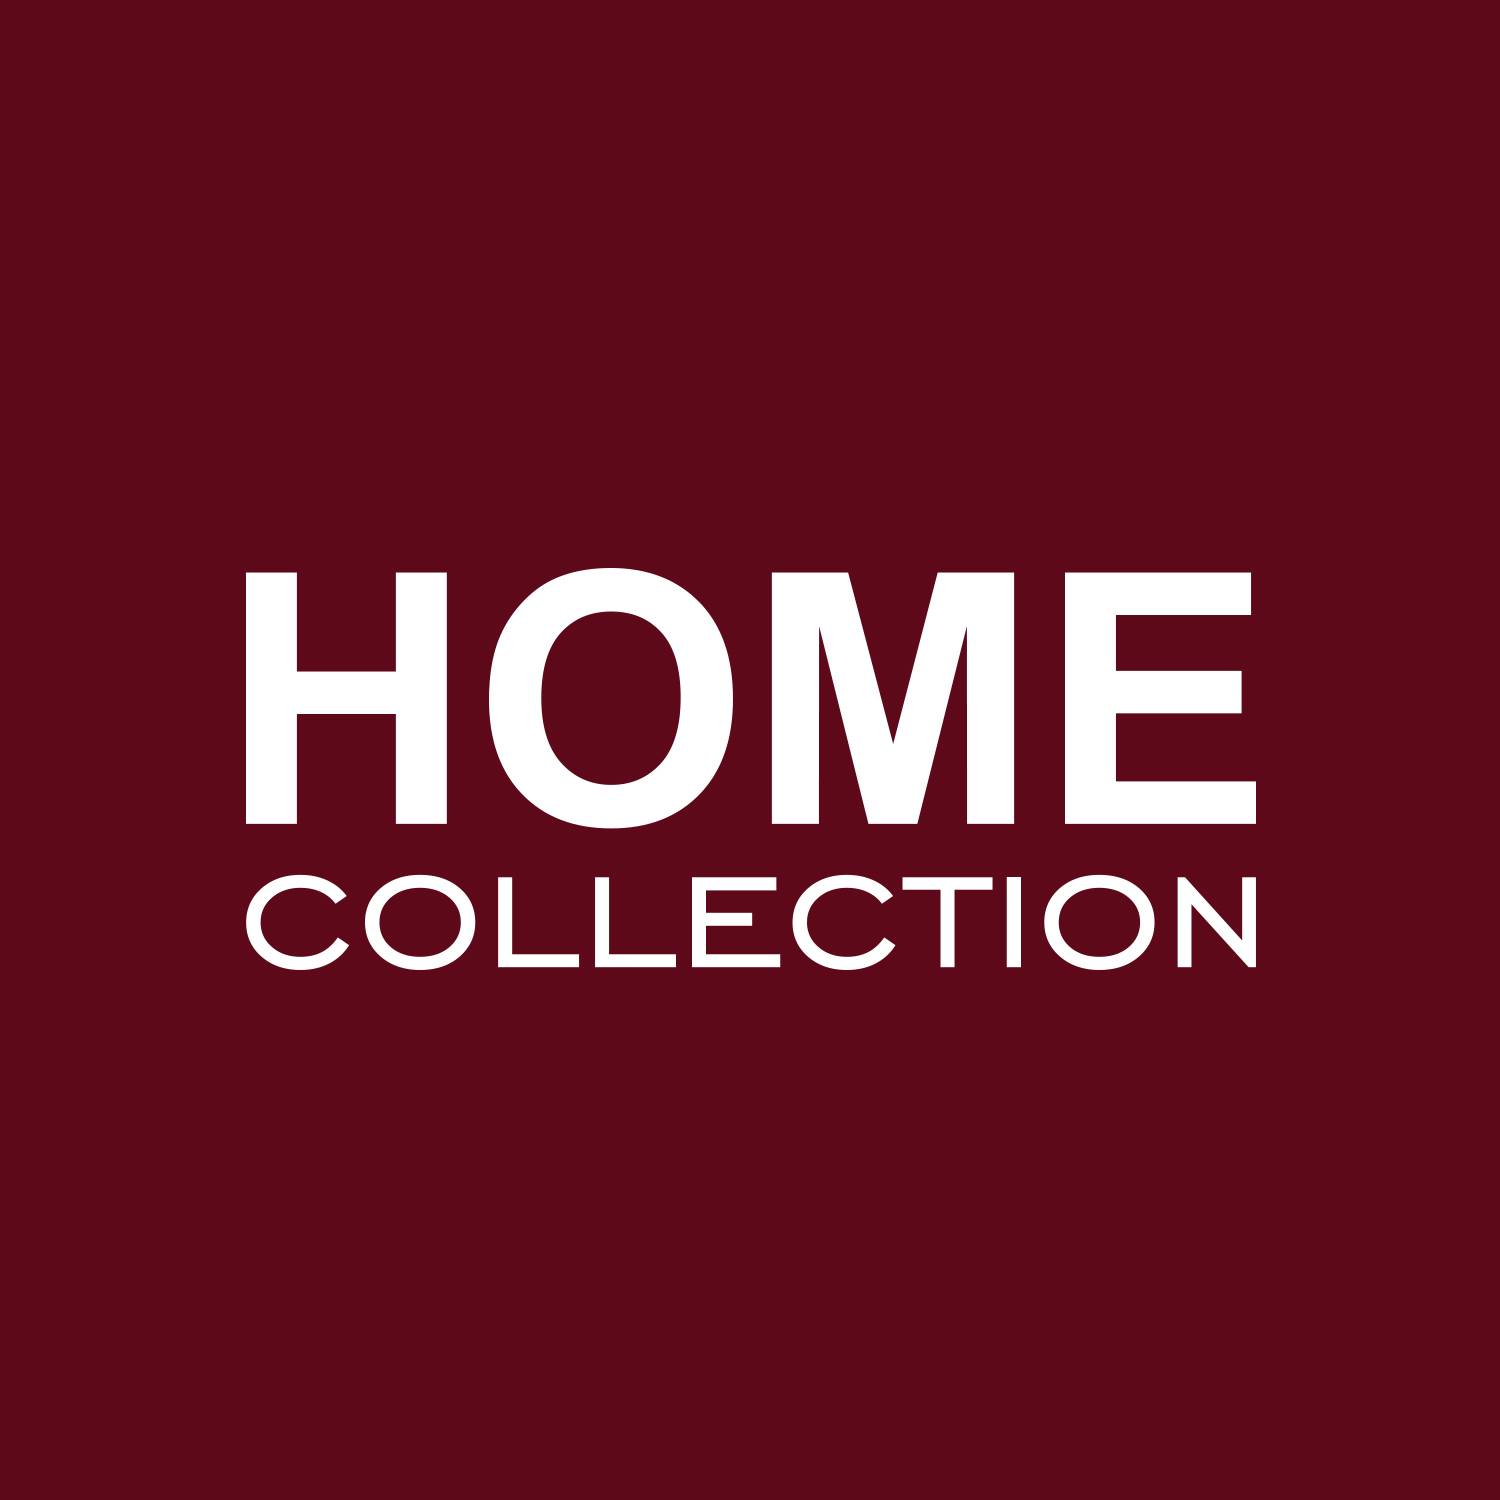 Collection companies. Хоум коллекшн. Фабрика Home collection Рязань. КОЖПРОММЕБЕЛЬ Рязань. Home collection logo.